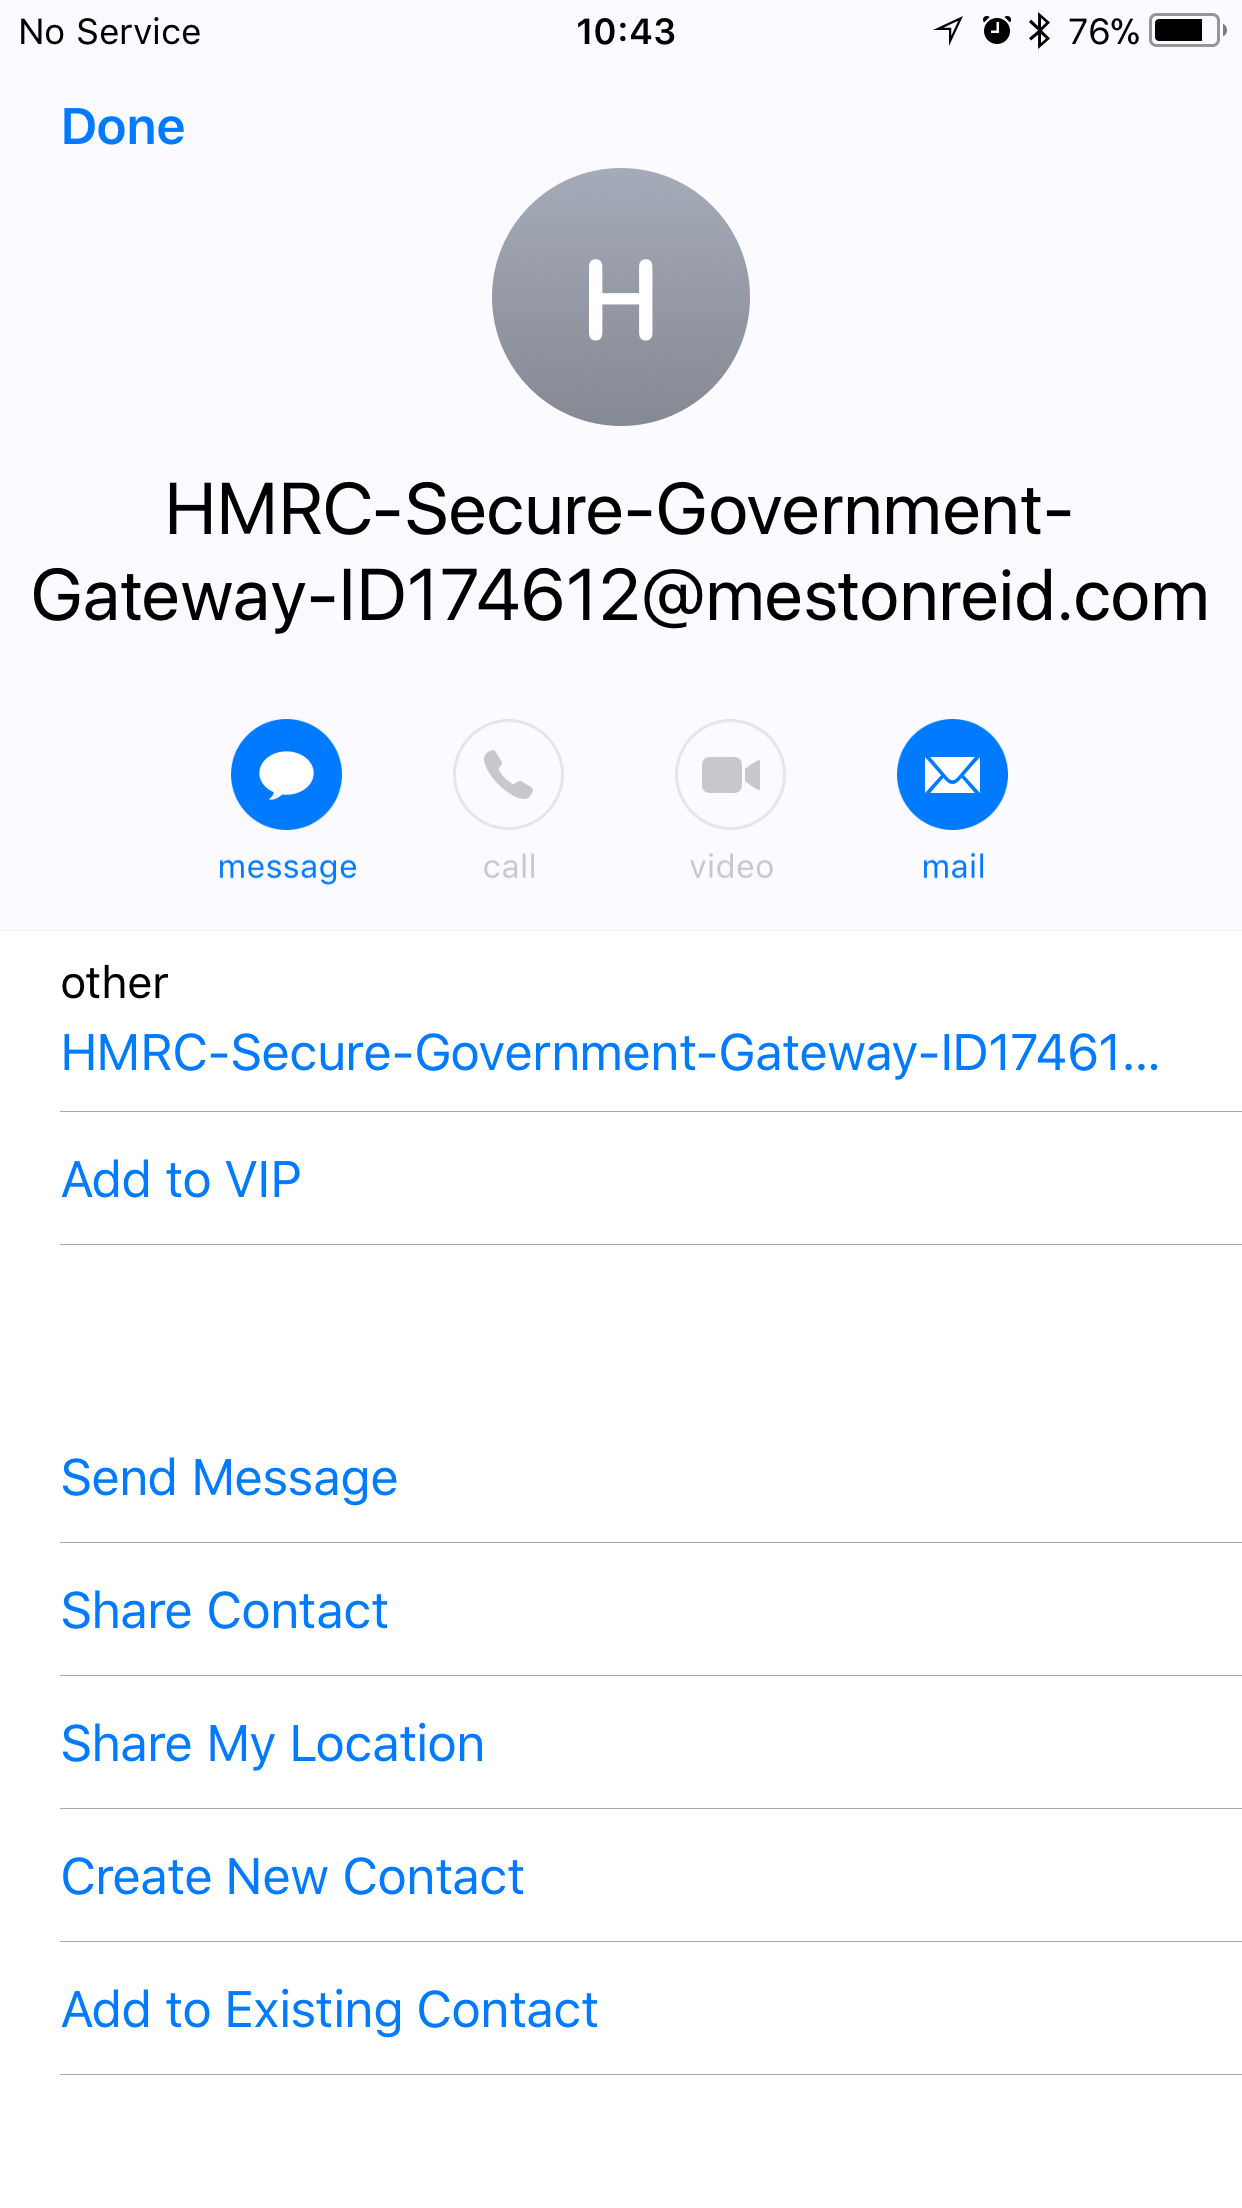 news-scam-alert-fake-hmrc-emails-resolver